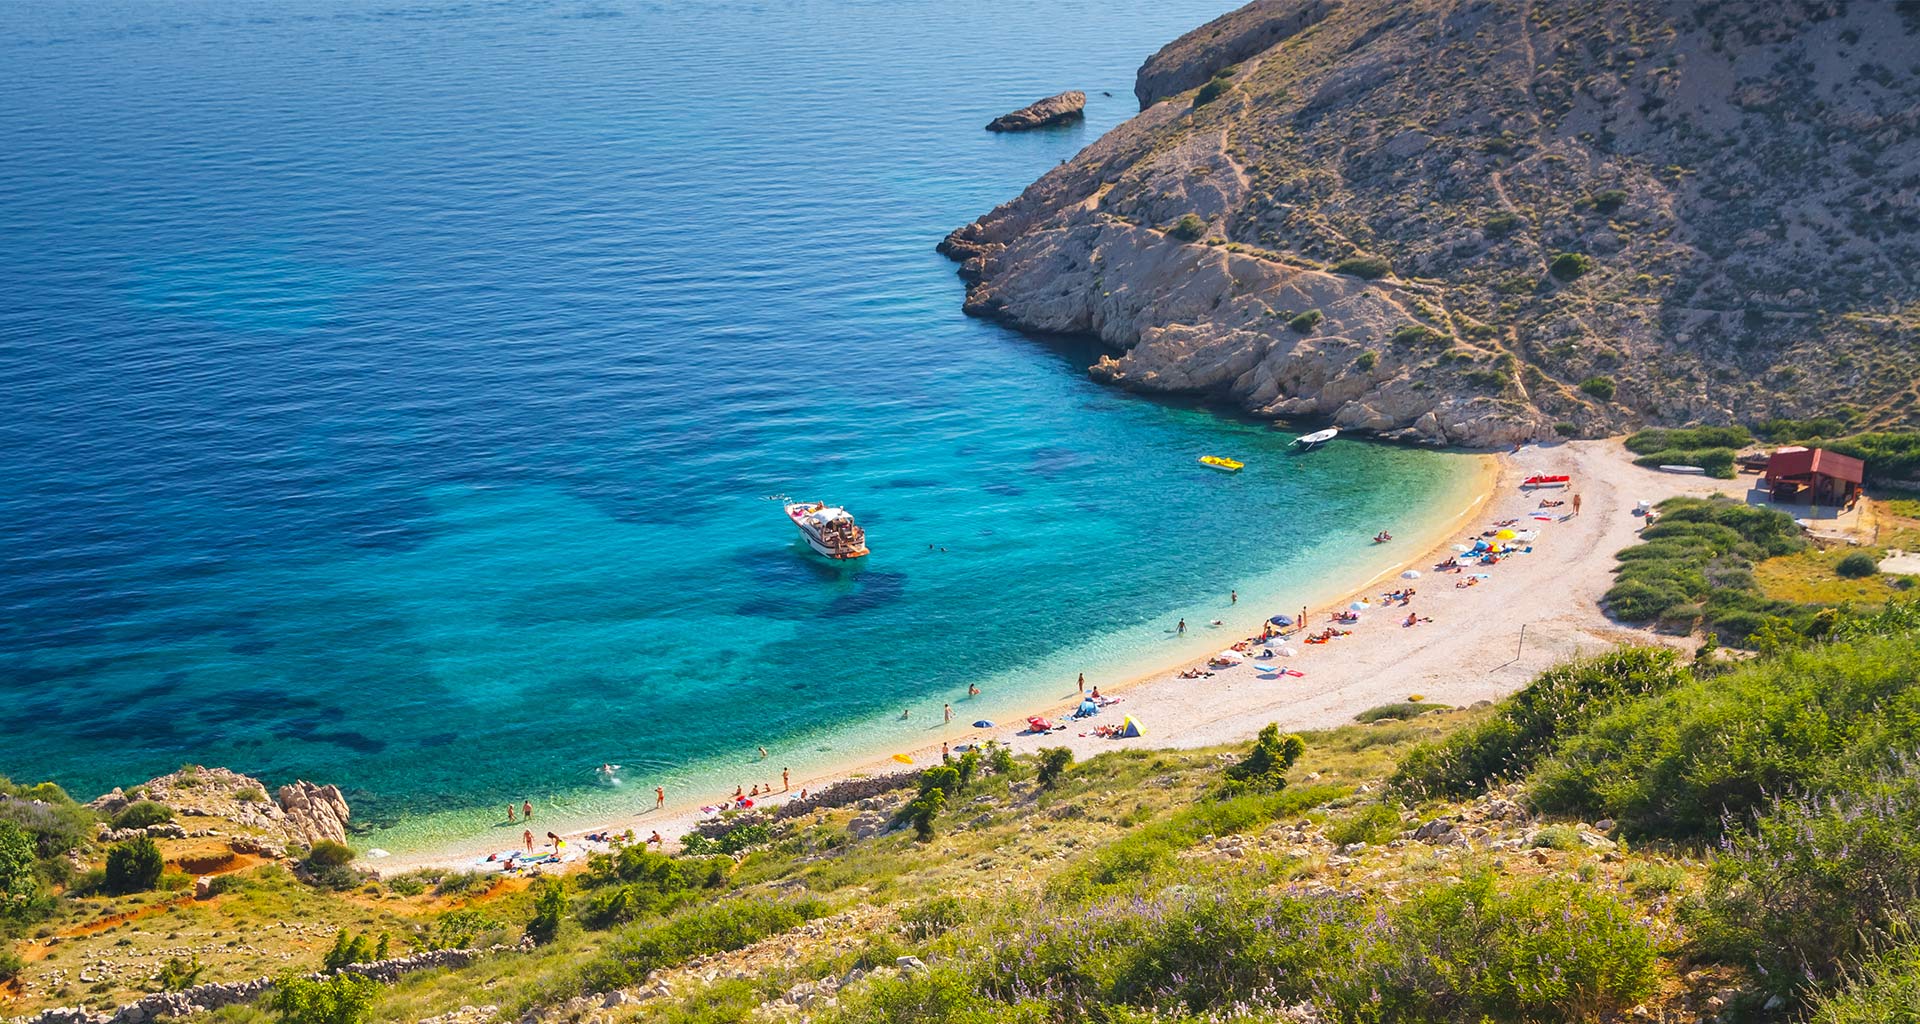 TOP 3 hidden beaches on the island of Krk